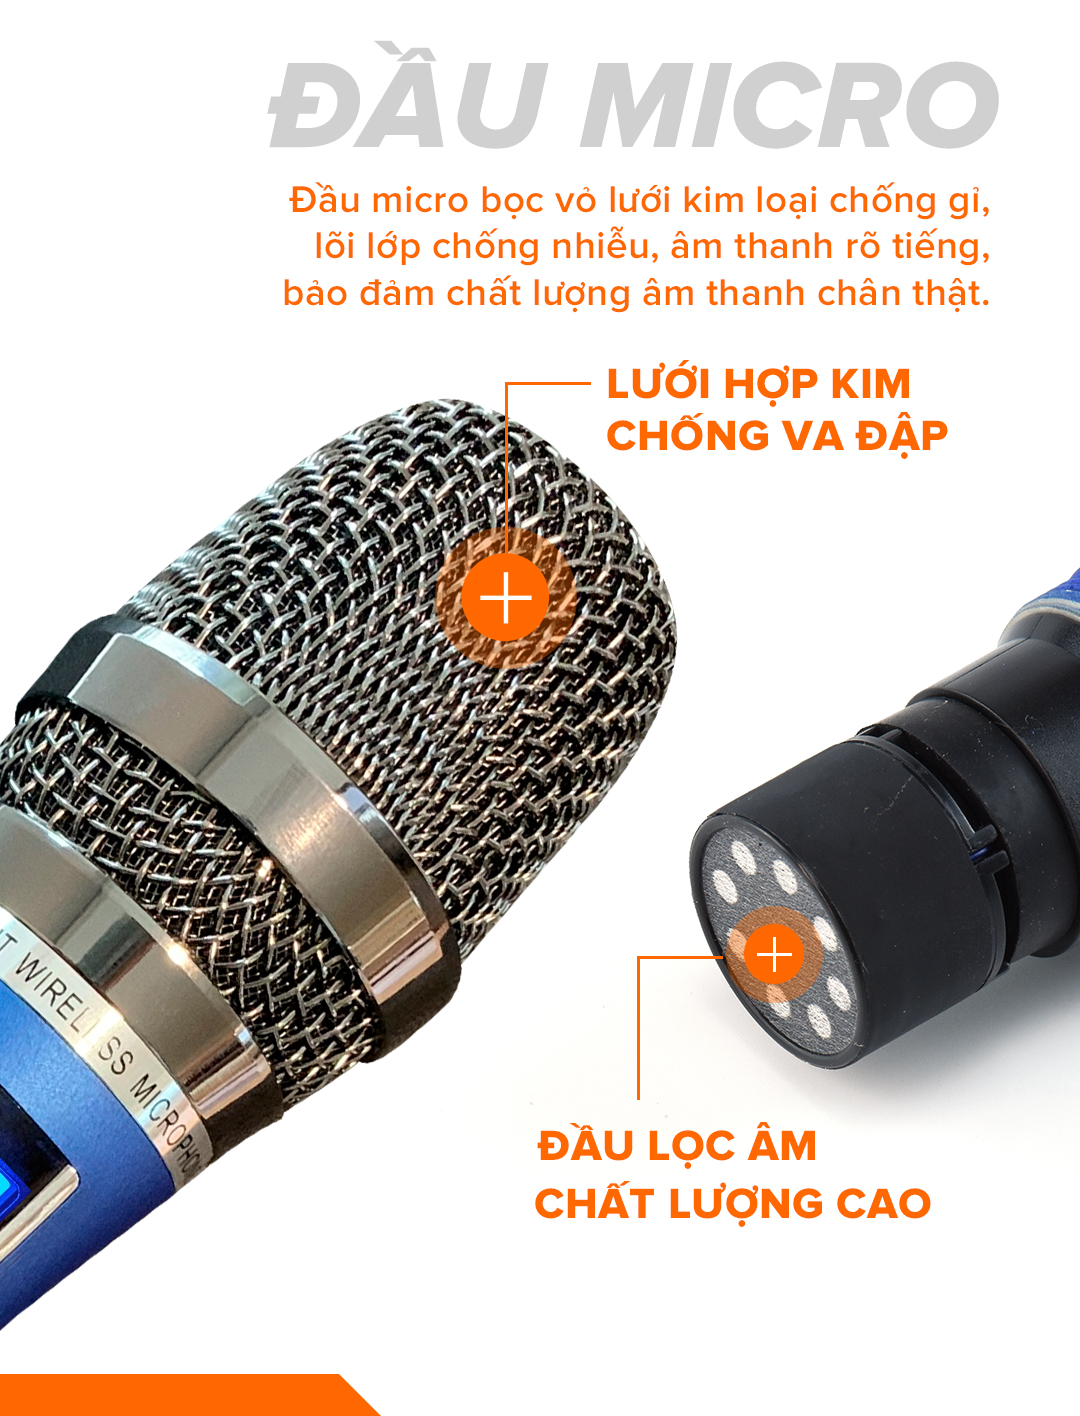 Micro không dây cao cấp C.O.K ST-212 (2 Micro), [Micro Karaoke phù hợp với mọi loa kéo & dàn âm...